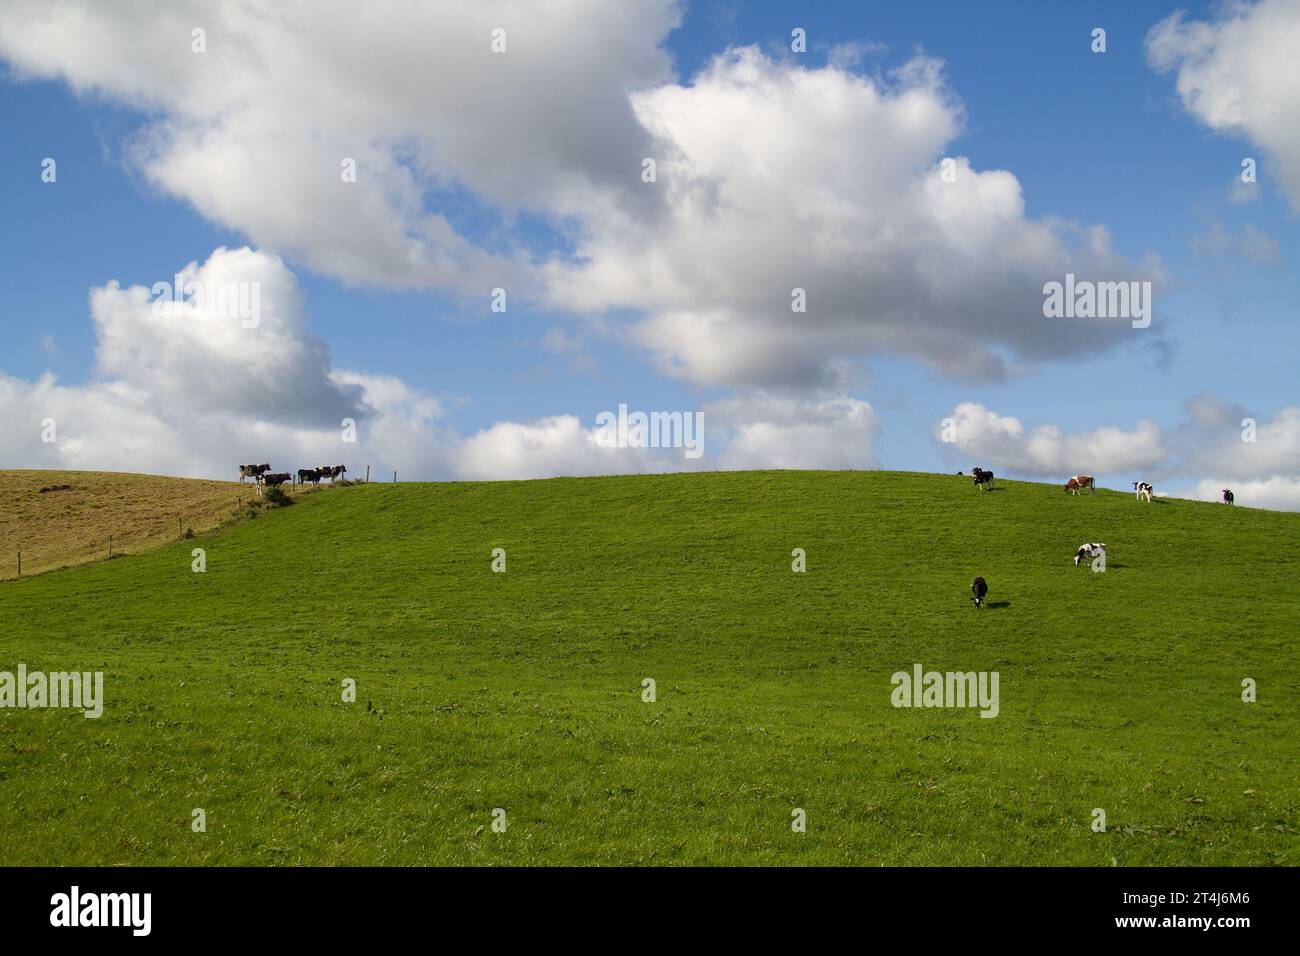 Vaches noires et blanches sur une prairie vallonnée sous un ciel bleu avec des nuages Banque D'Images